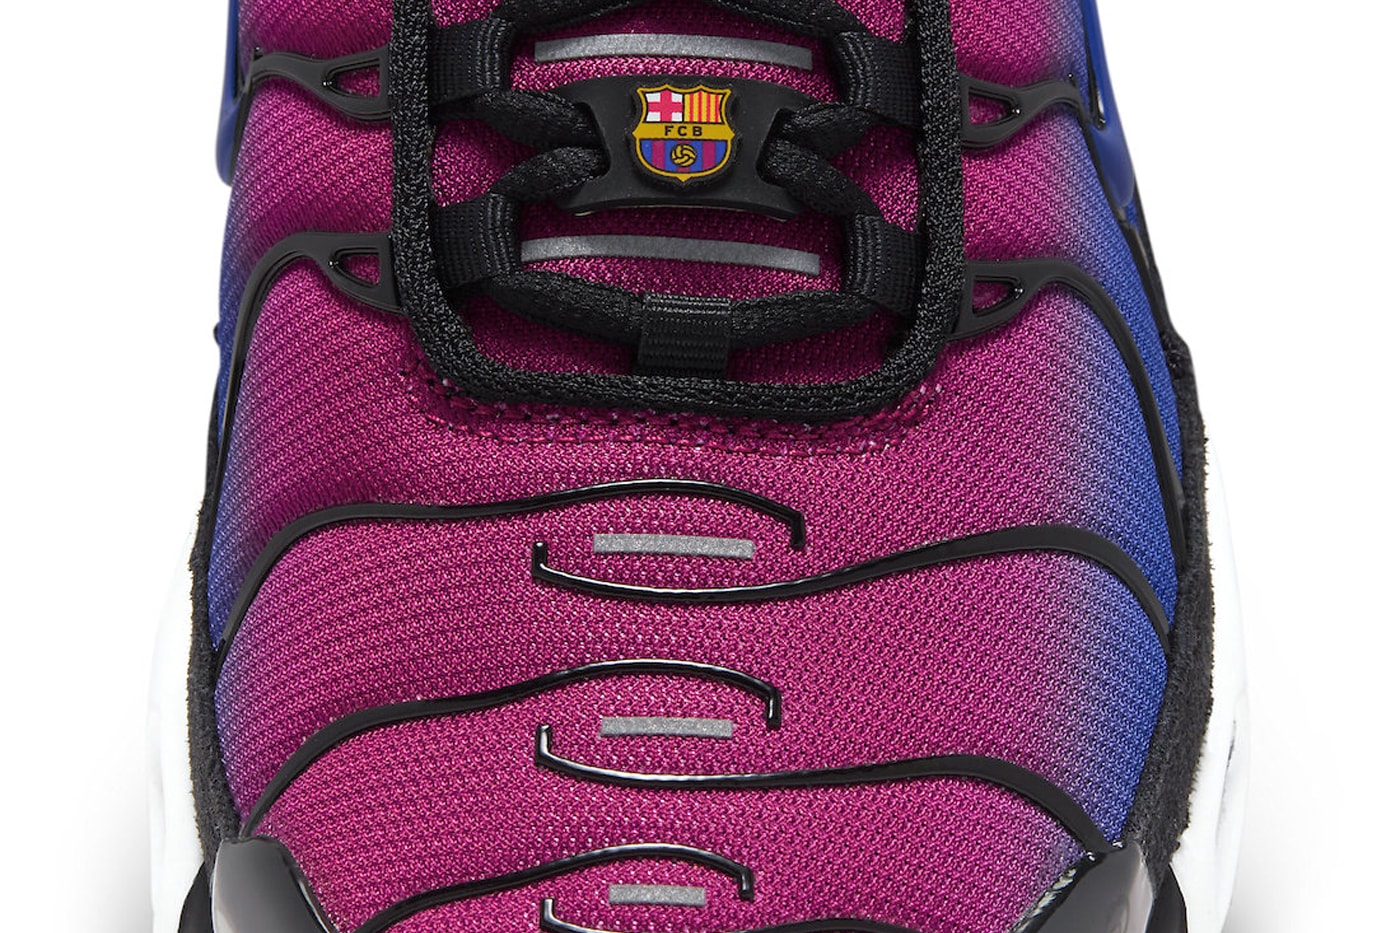 Patta x Nike Air Max Plus F.C. Barcelona Release Date